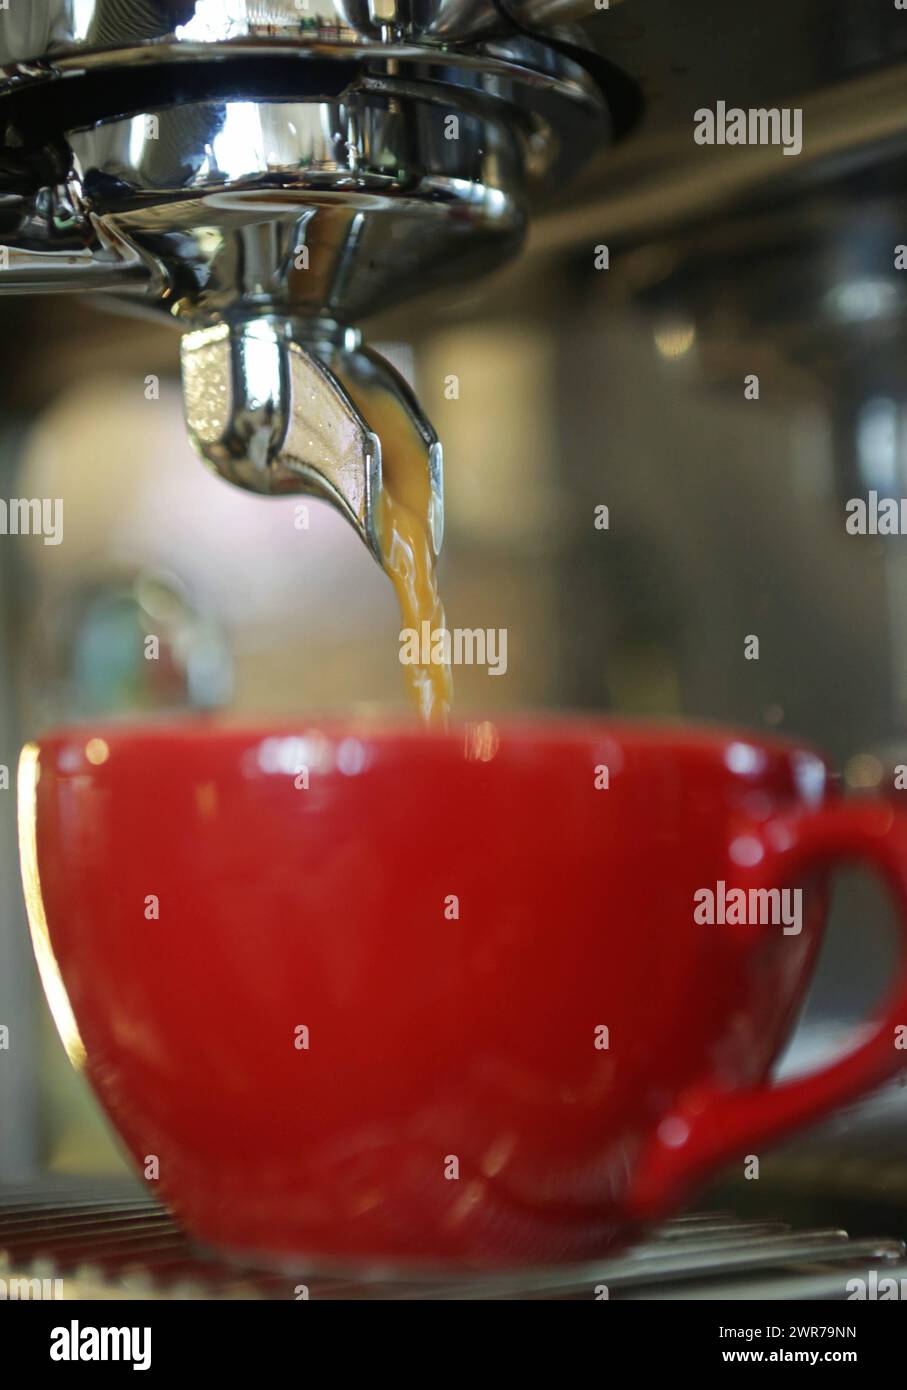 Symbolbild zum Thema Kaffee Hier: Rote Kaffeetasse in Siebträgermaschine *** immagine simbolica sul tema del caffè qui tazza di caffè rosso in macchina per portafiltro Foto Stock